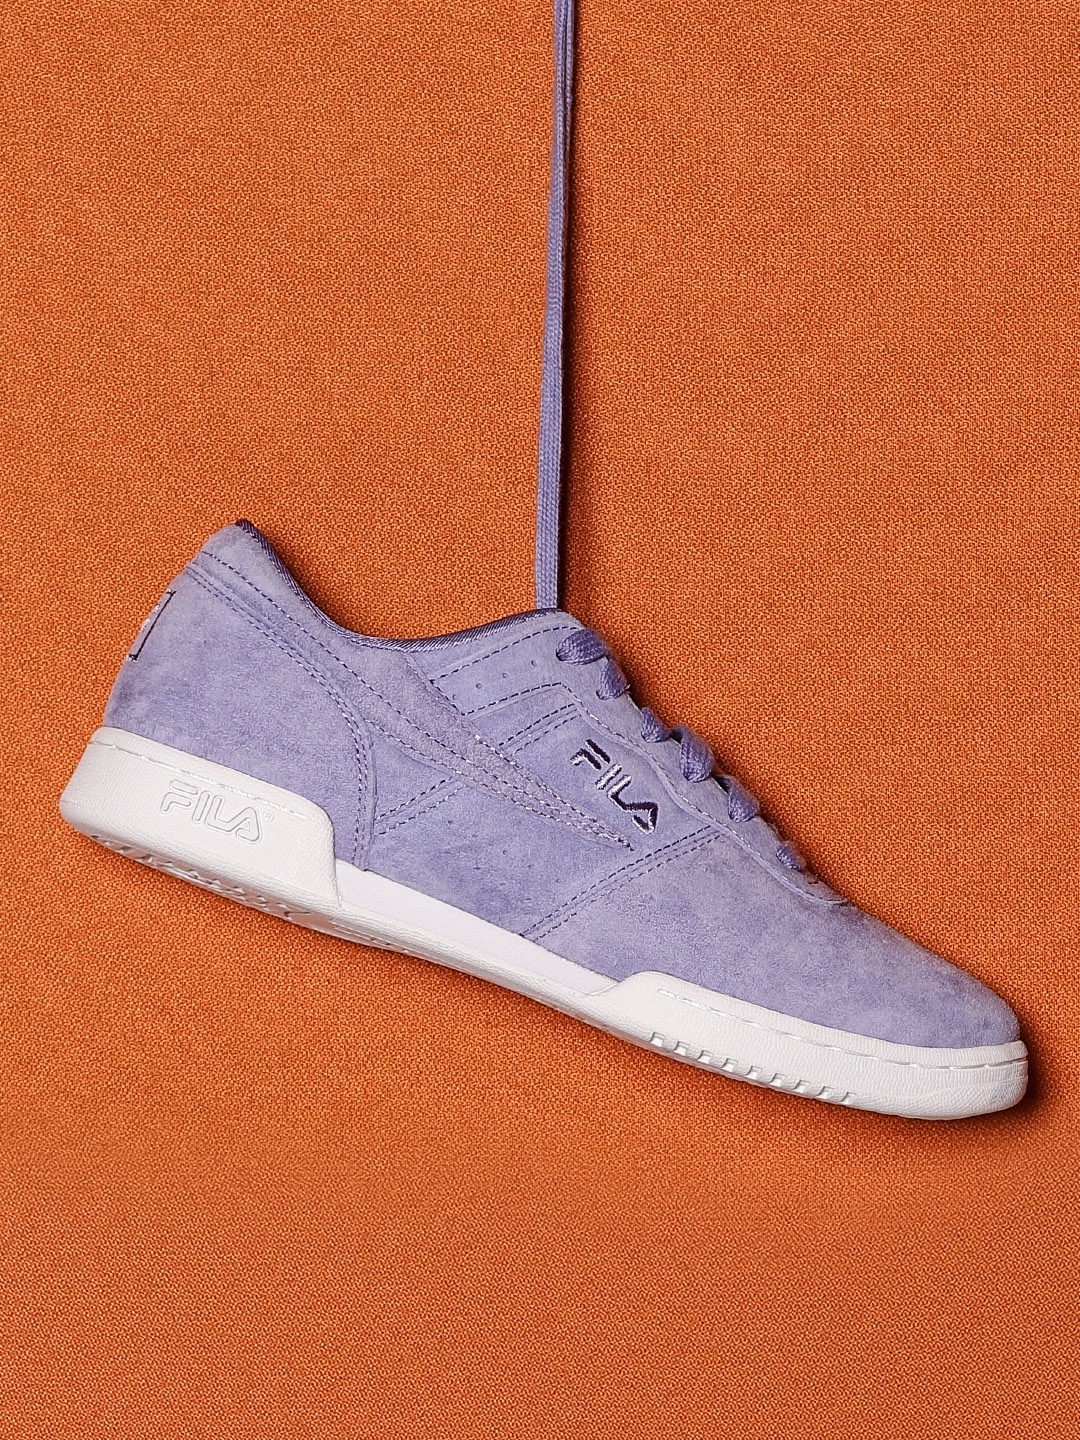 fila shoes lavender